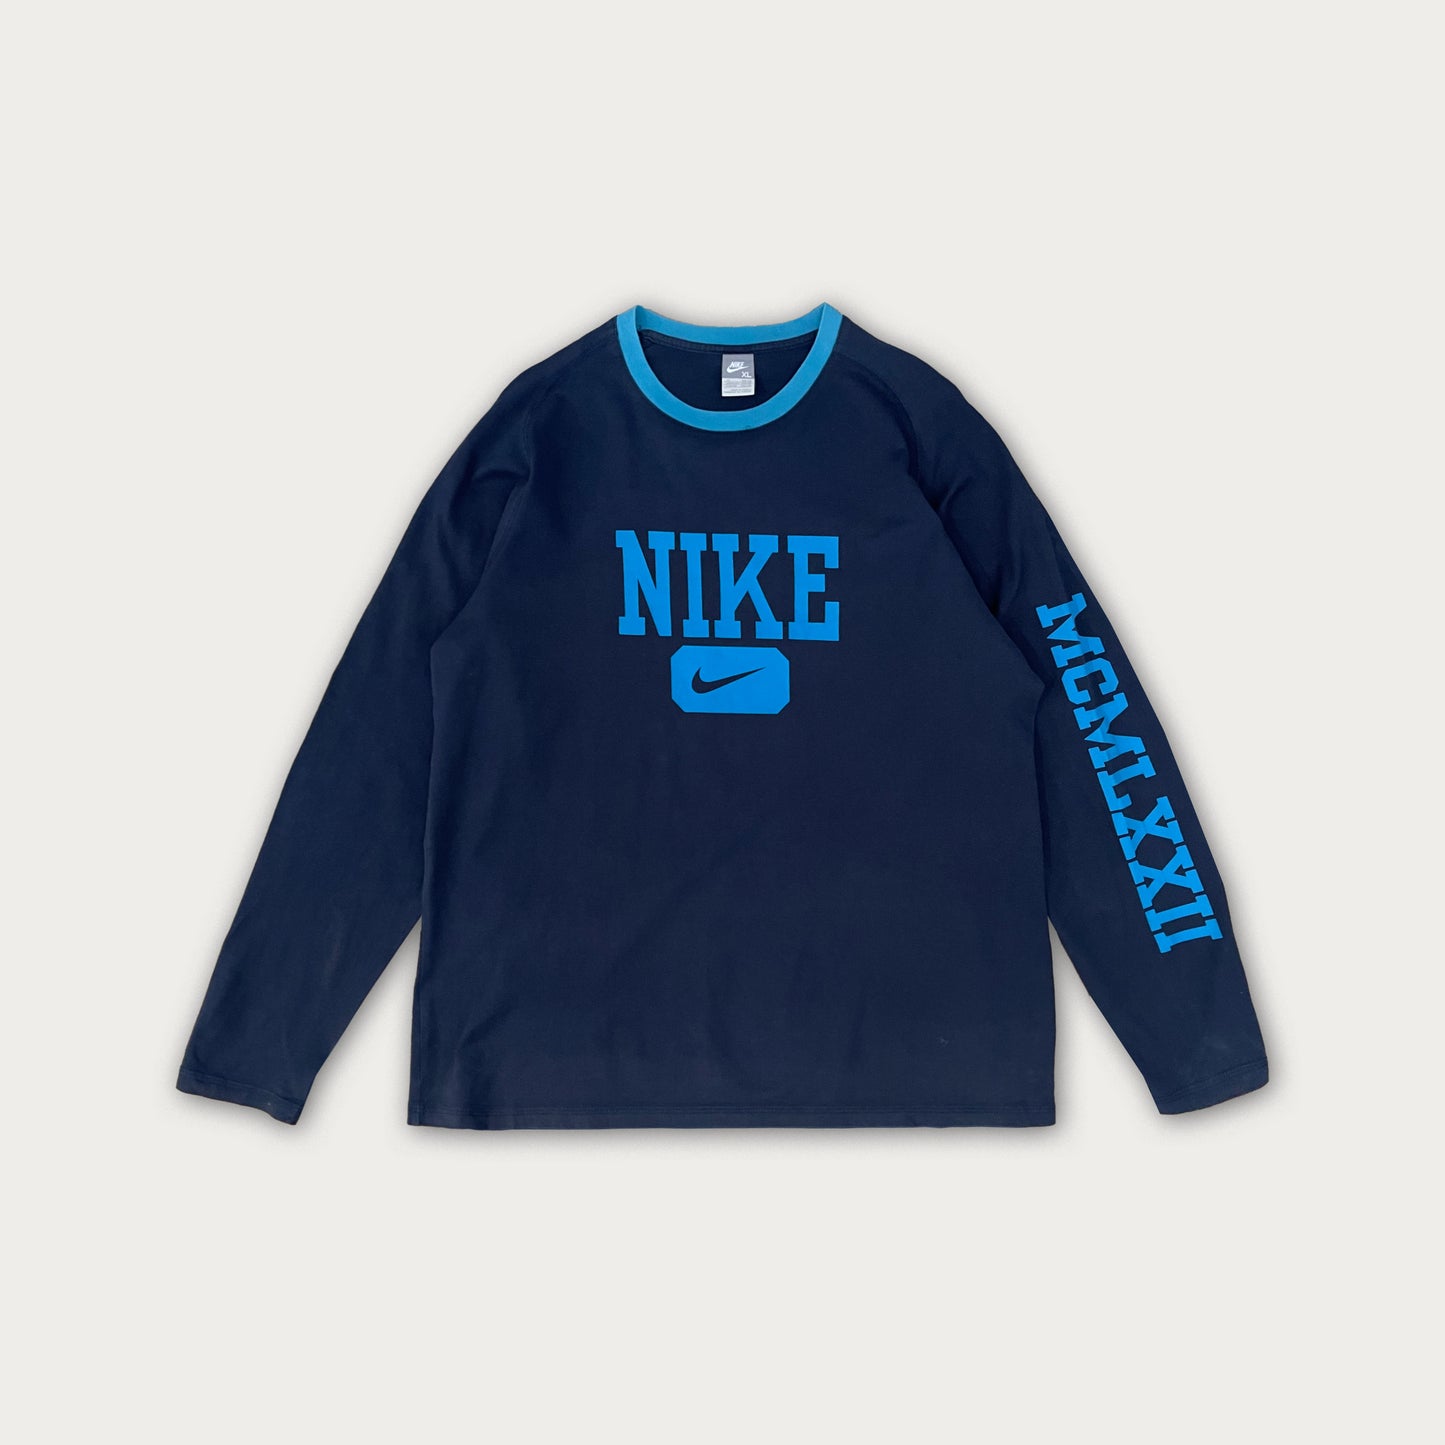 00s Nike Light Sweatshirt